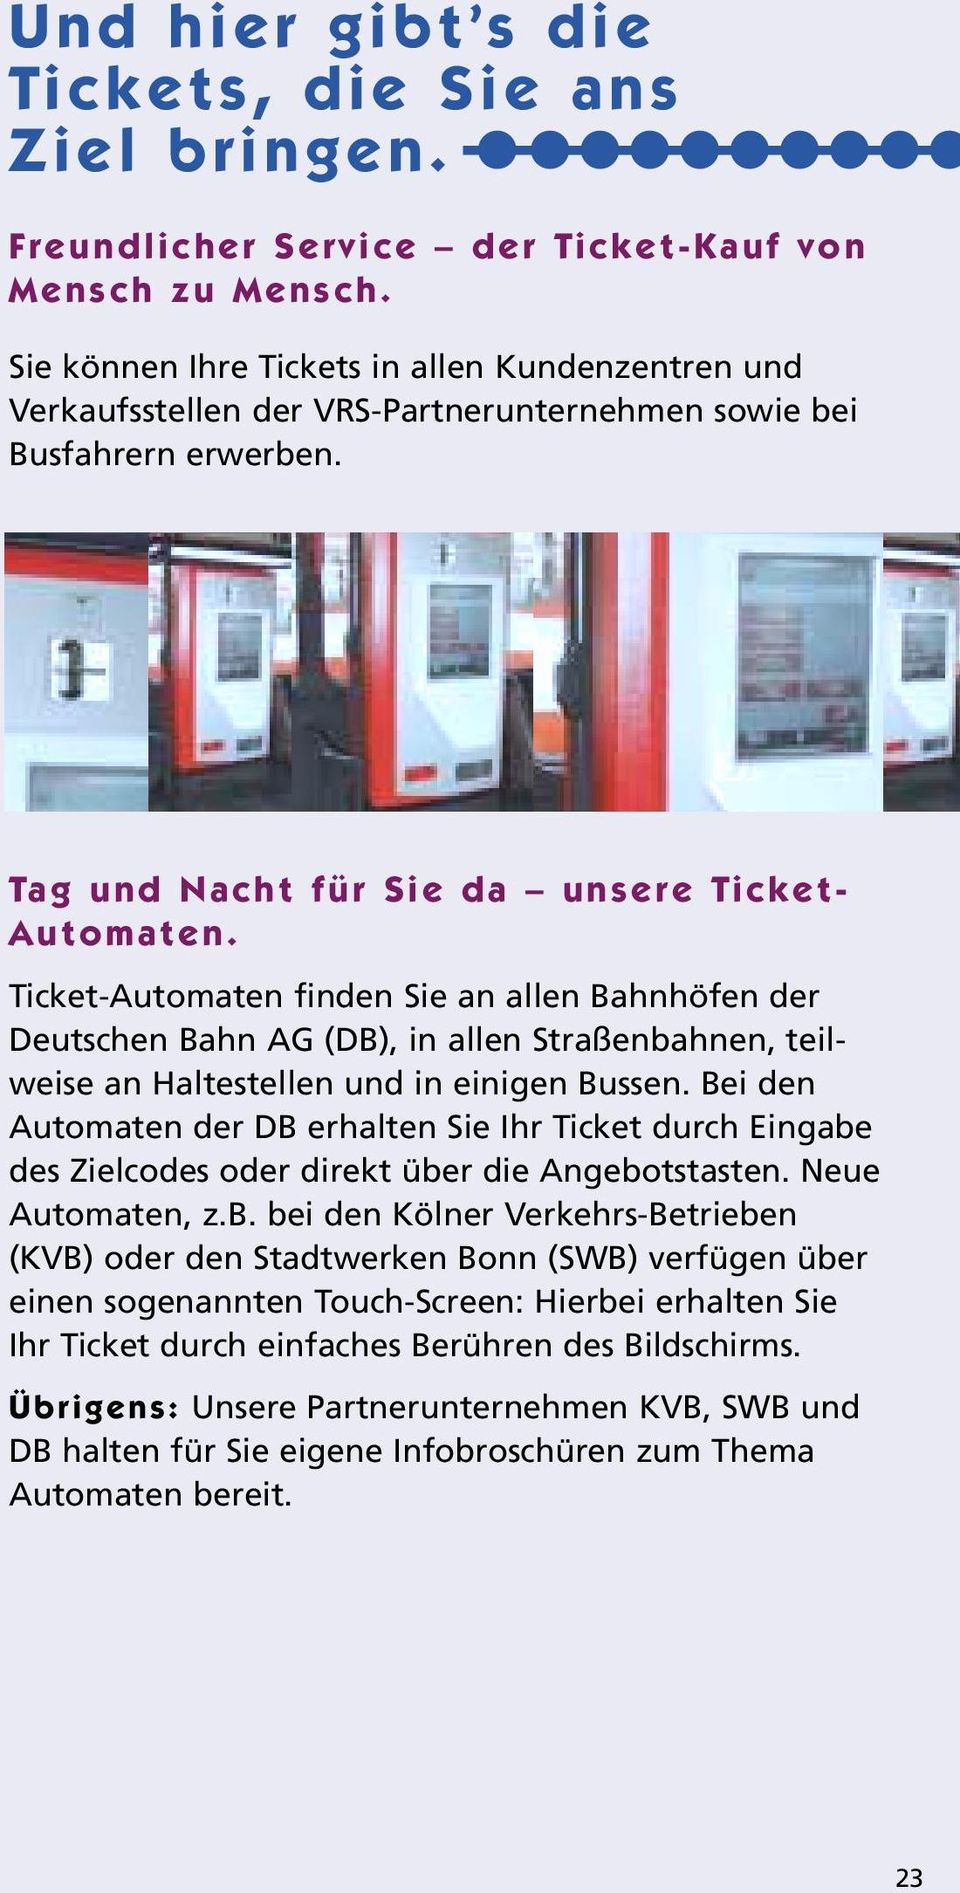 Ticket-Automaten finden Sie an allen Bahnhöfen der Deutschen Bahn AG (DB), in allen Straßenbahnen, teilweise an Haltestellen und in einigen Bussen.